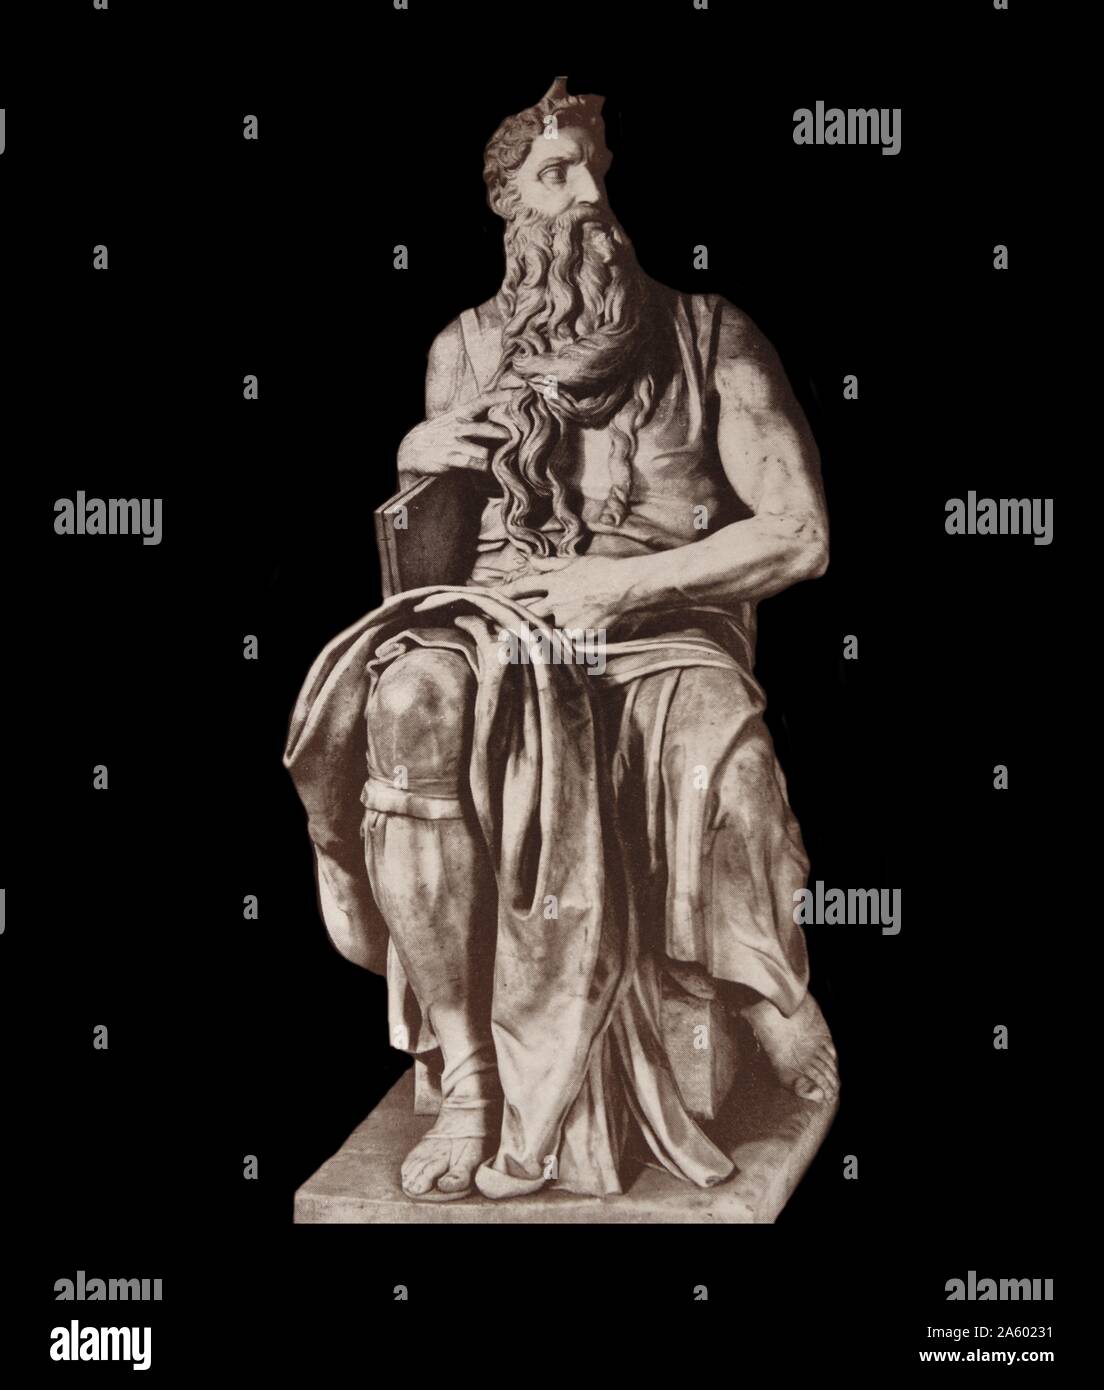 Der Moses (Italienisch: Mosè c. 1513 – 1515) ist eine Skulptur von der italienischen Hochrenaissance Künstler Michelangelo Buonarroti, untergebracht in der Kirche San Pietro in Vincoli in Rom. Beauftragte im Jahr 1505 von Papst Julius II. für sein Grab, Stockfoto